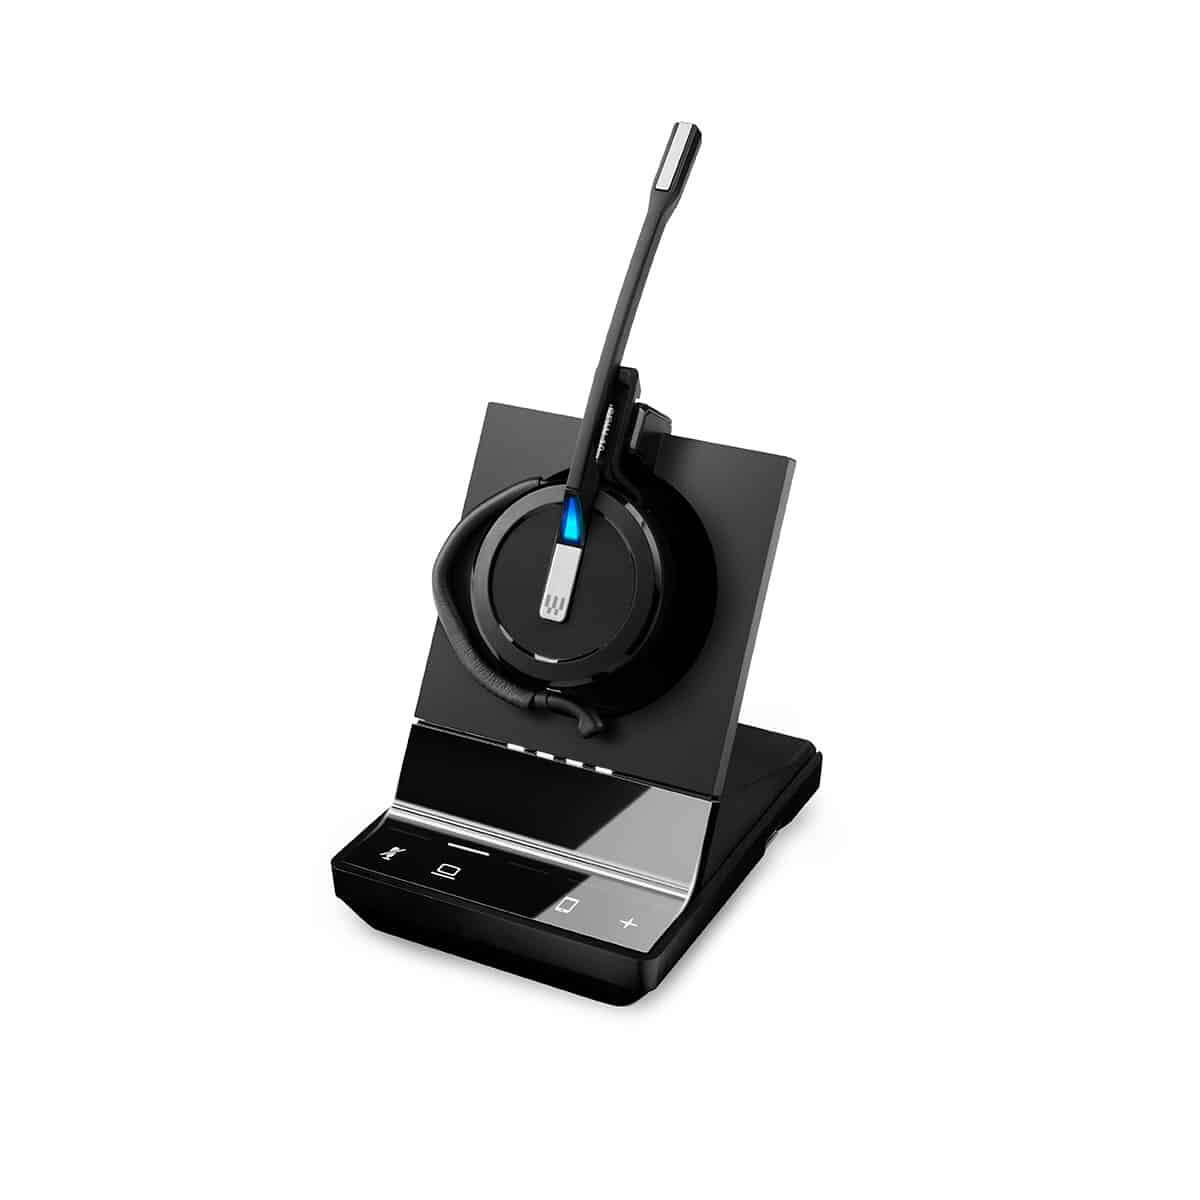 Sennheiser epos impact sdw 5013 eu wireless headset + állvány - fekete